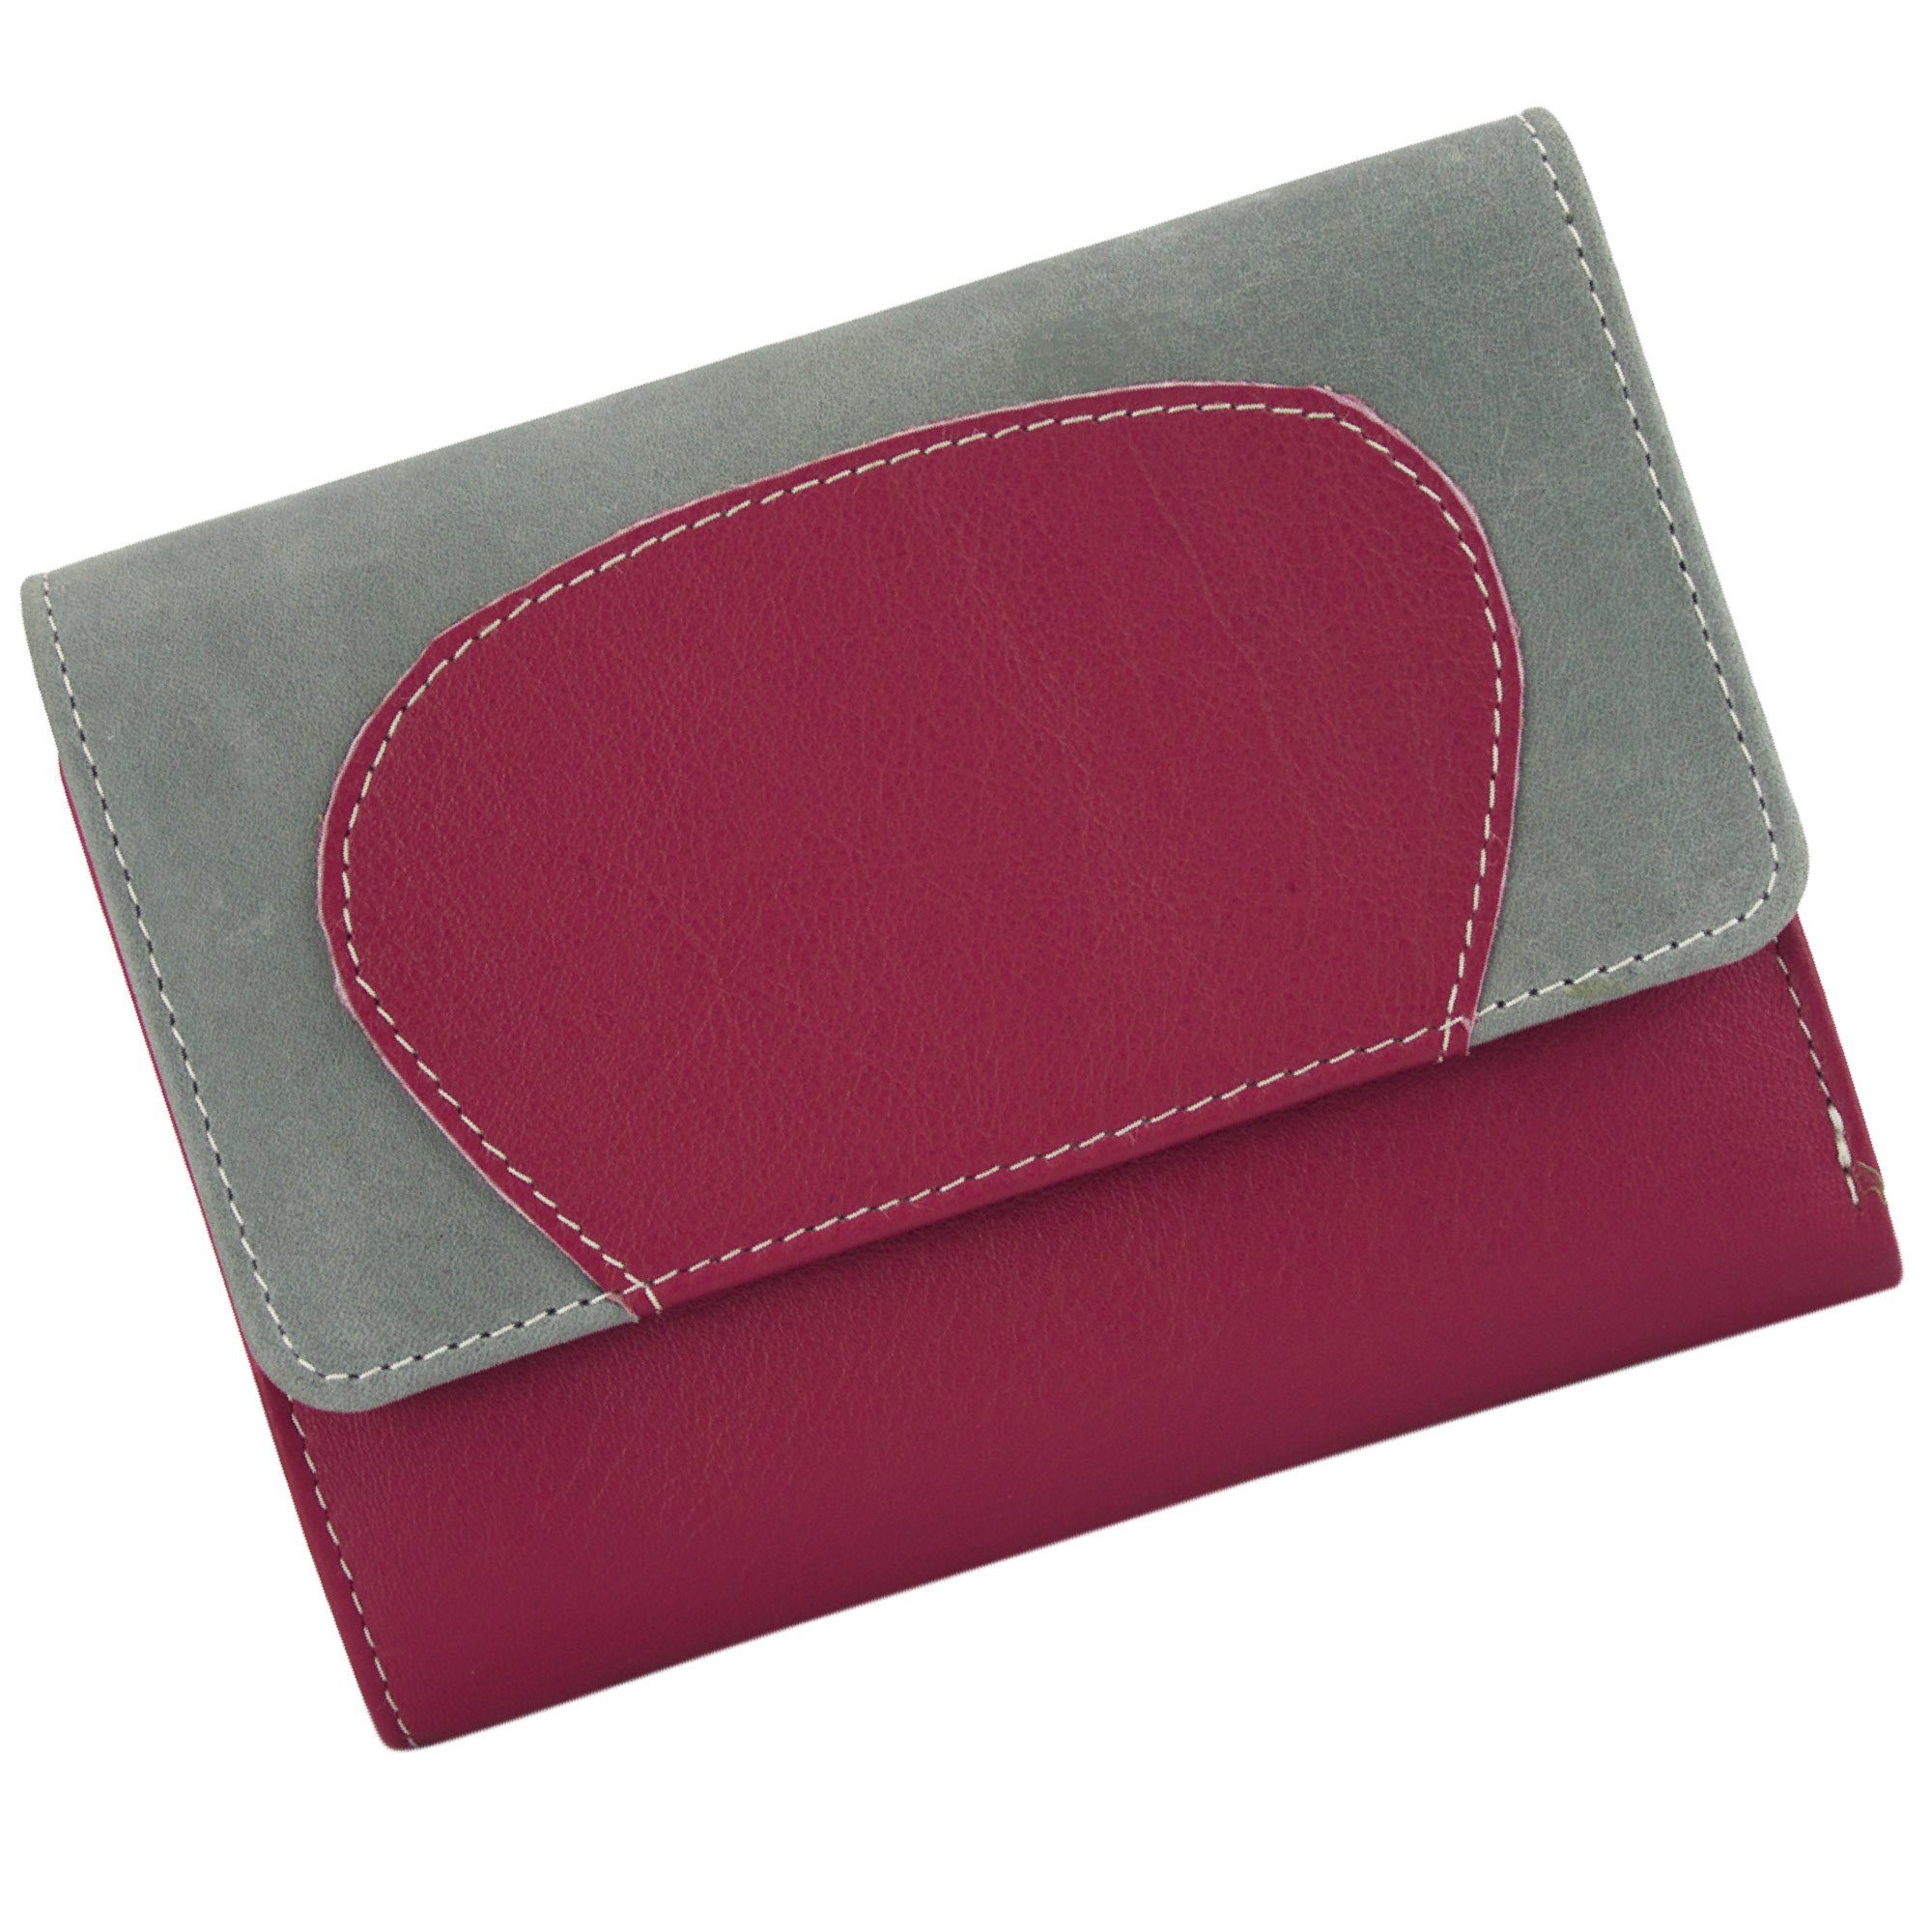 Sunsa Geldbörse echt Leder Geldbörse Damen Geldbeutel Portemonnaie große Brieftasche, echt Leder, aus recycelten Lederresten, mit RFID-Schutz, Unisex grau/pink